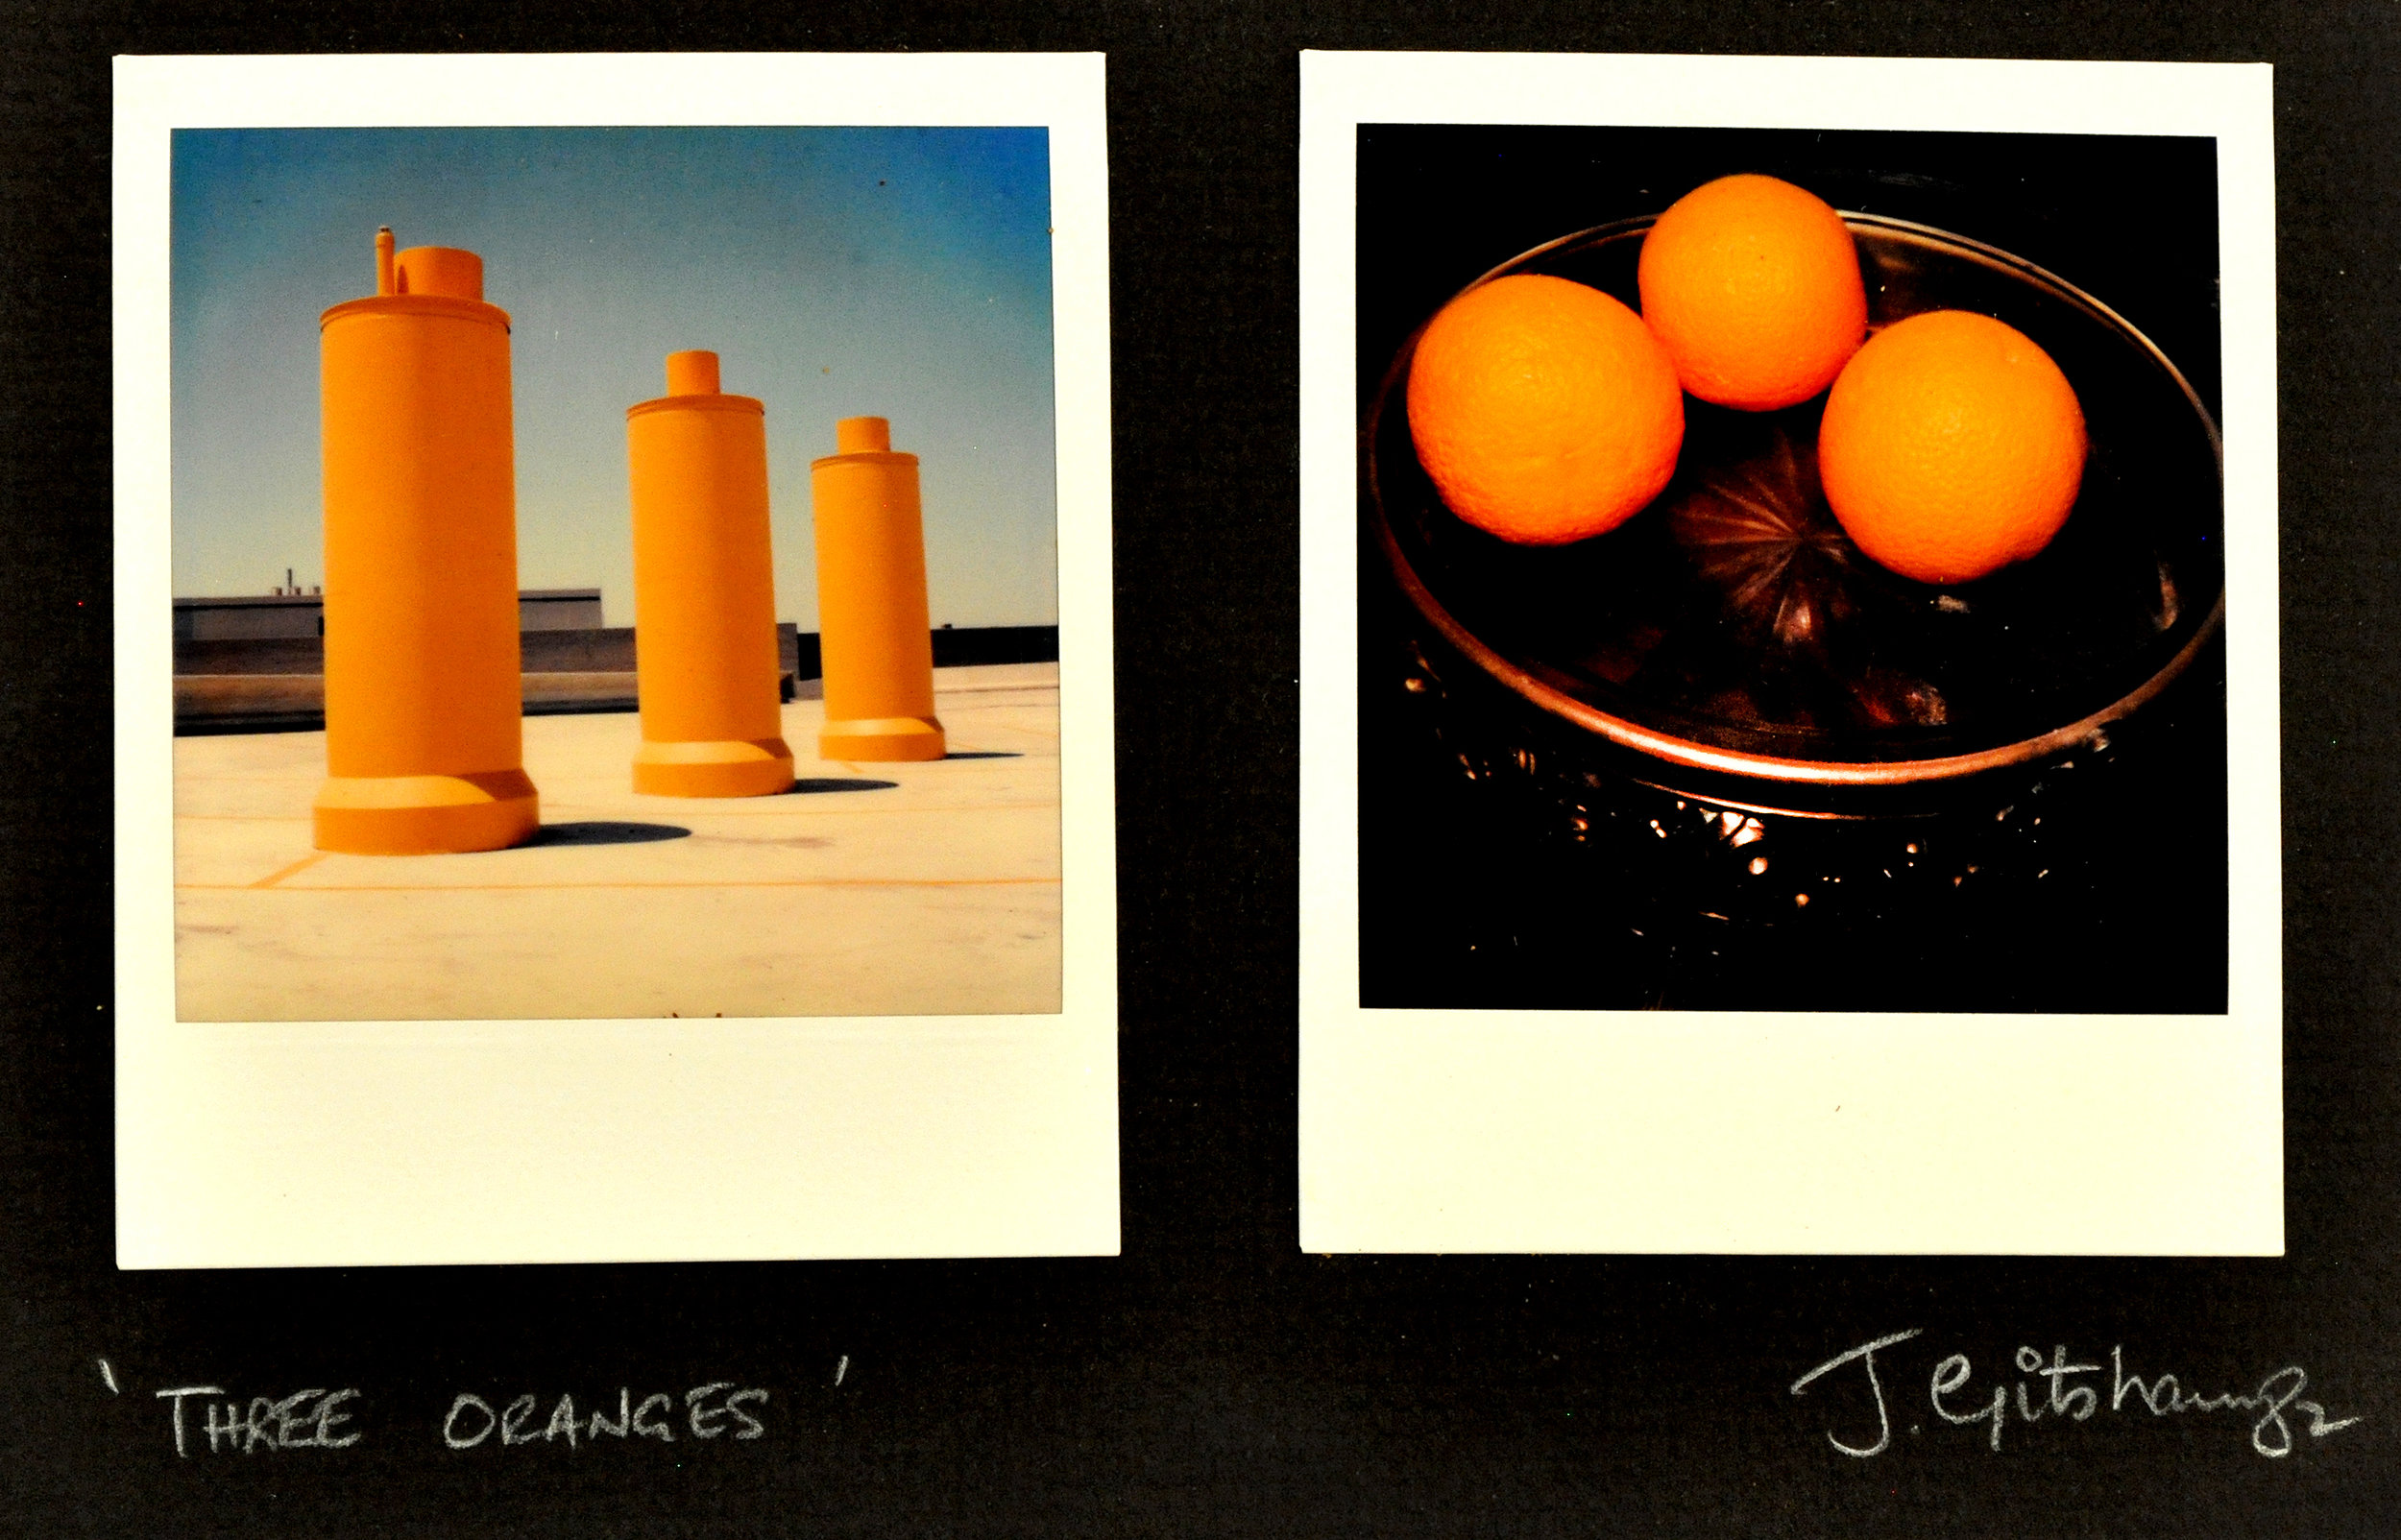  Three Oranges 1982 